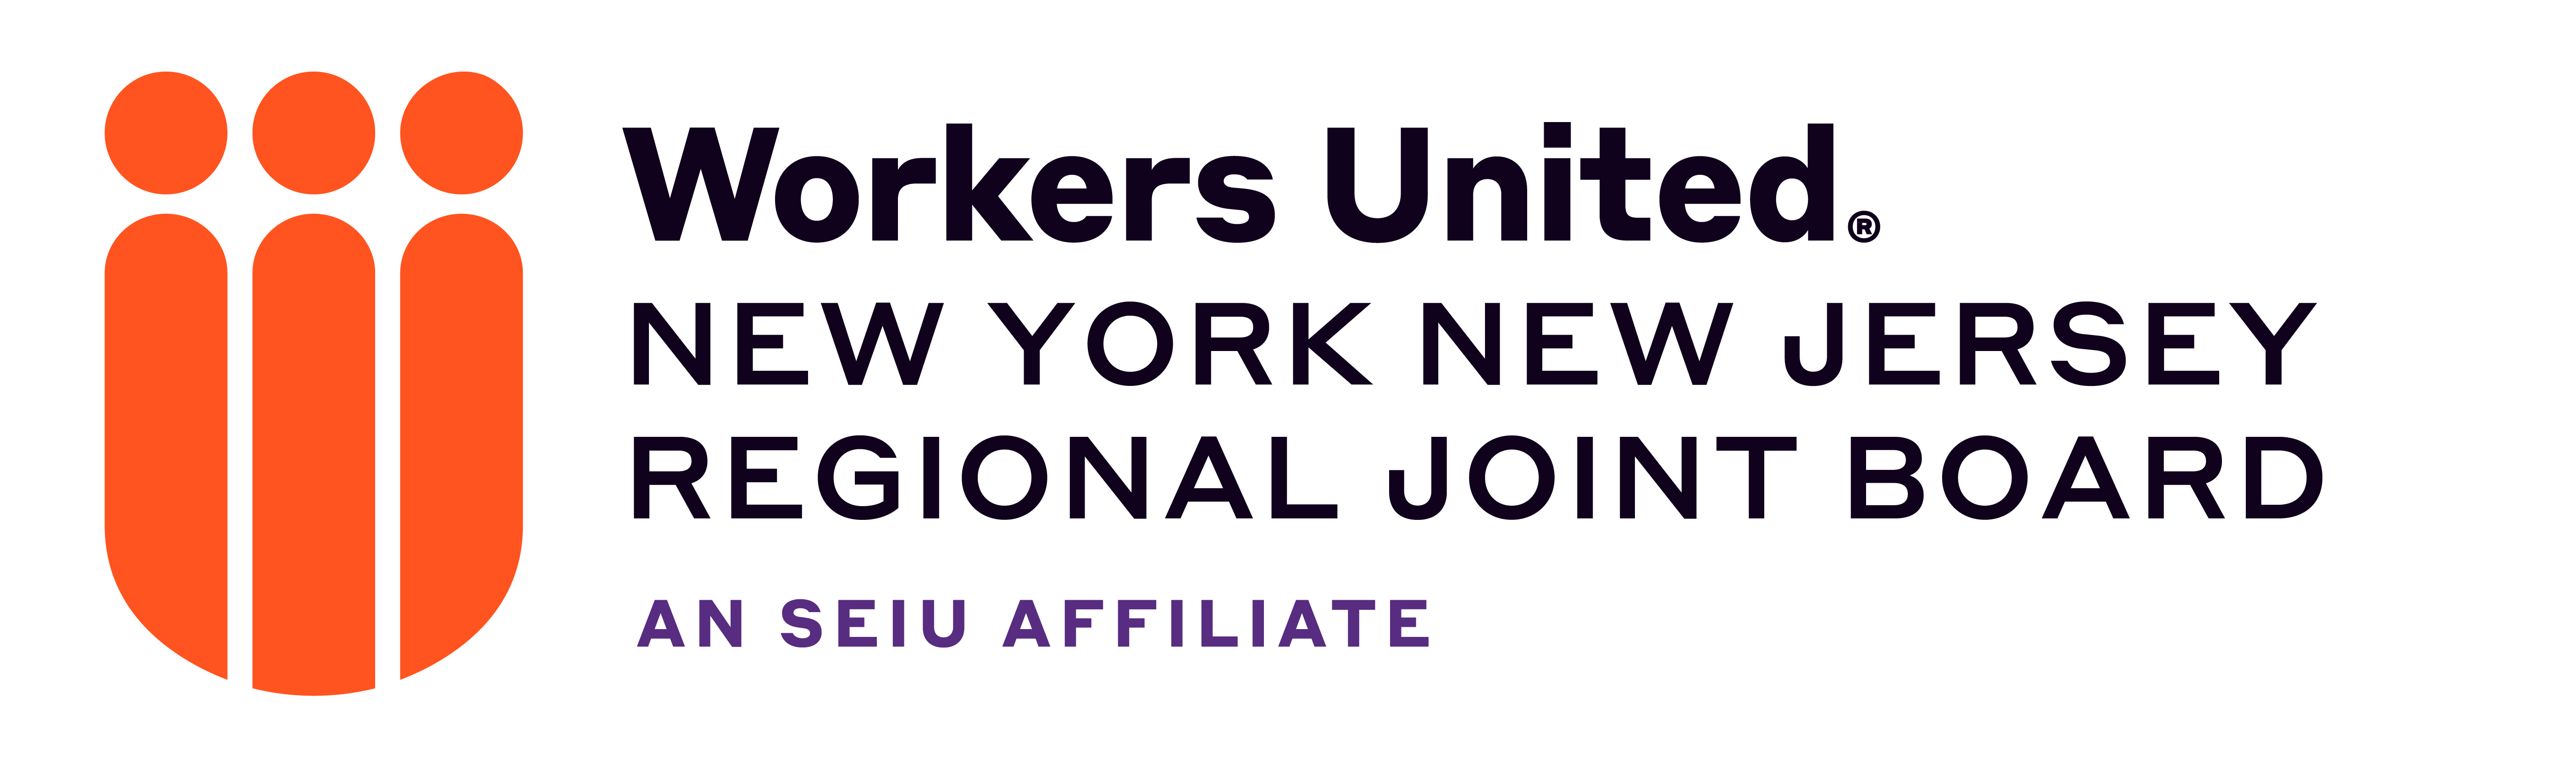 WU-Logos-Joint-Board-Stack-NYNJRJB (1)